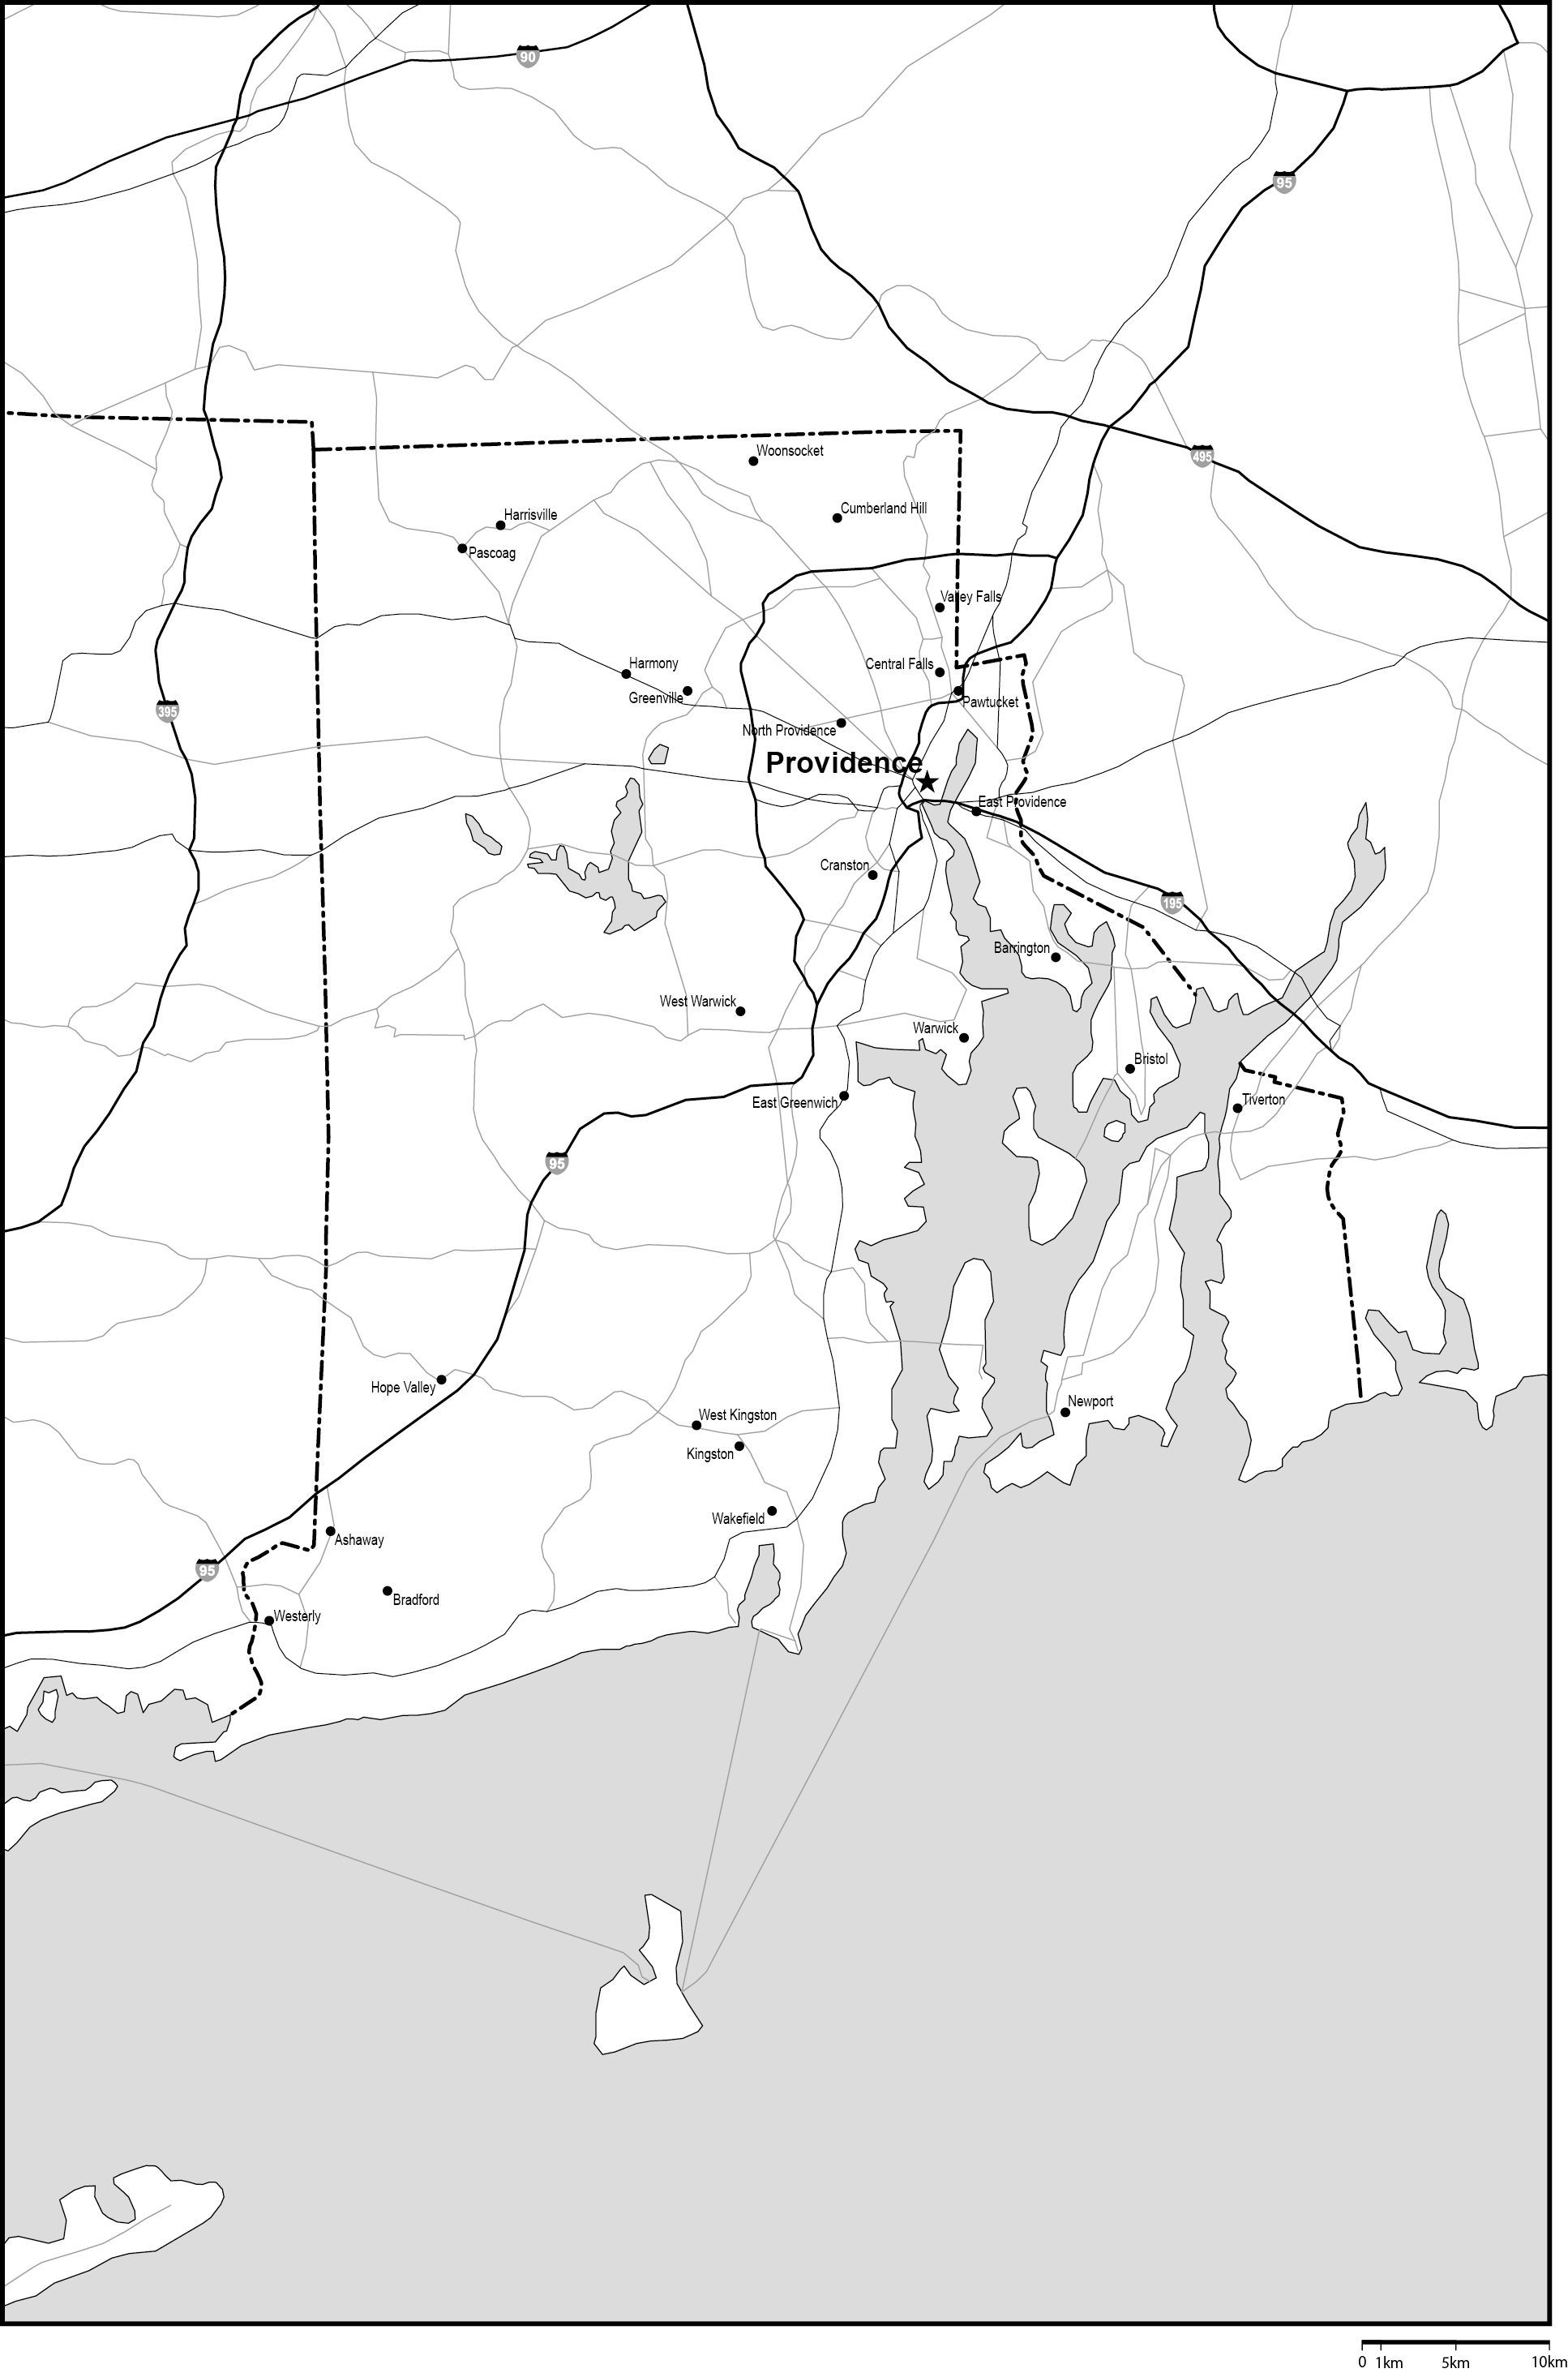 ロードアイランド州白地図州都・主な都市・道路あり(英語)フリーデータの画像